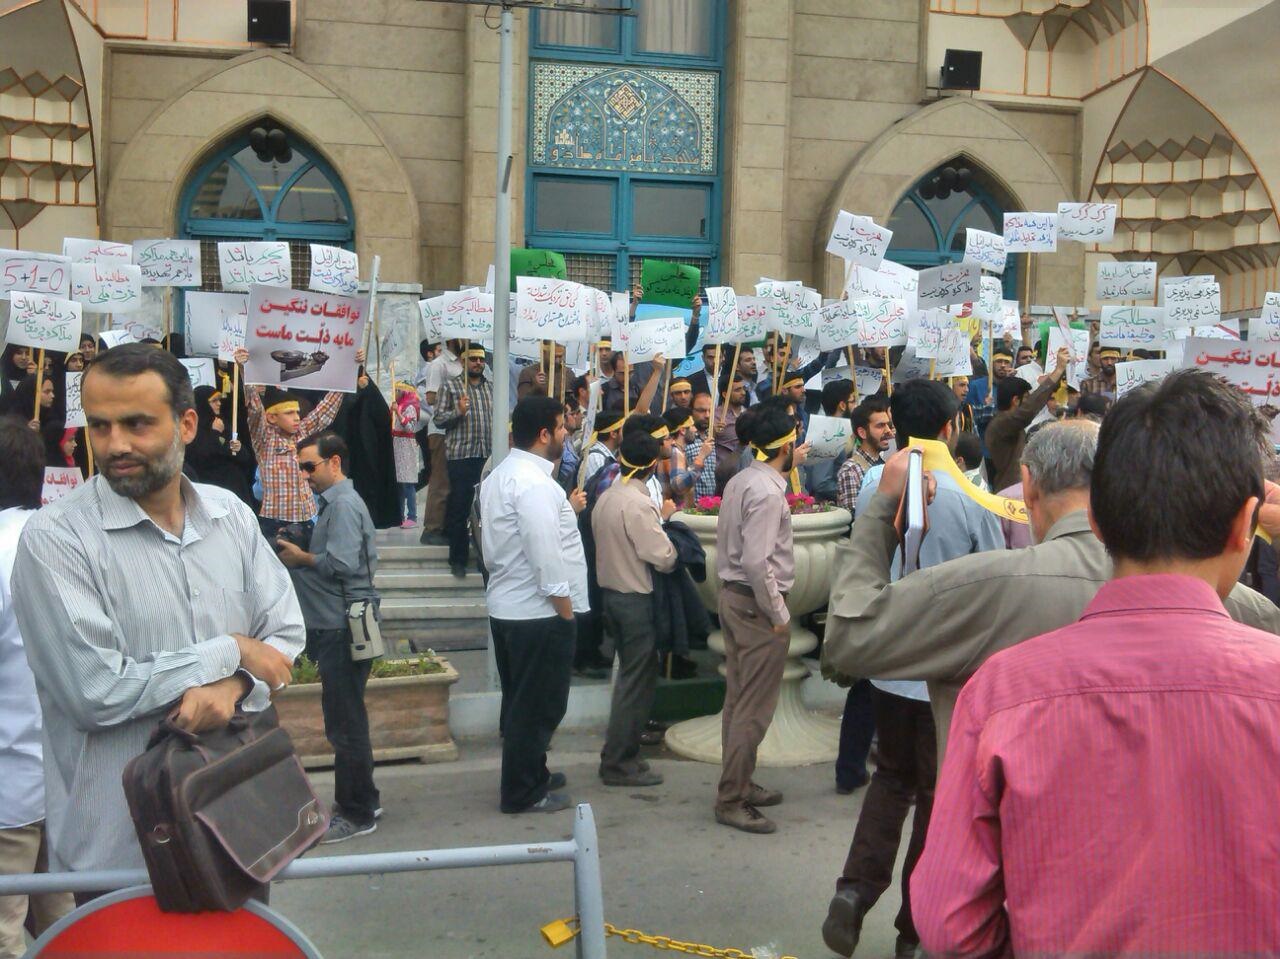 تجمعی که مجوزش لغو شده بود، برگزار شد/حضور معاون مطبوعاتی دولت احمدی نژاد